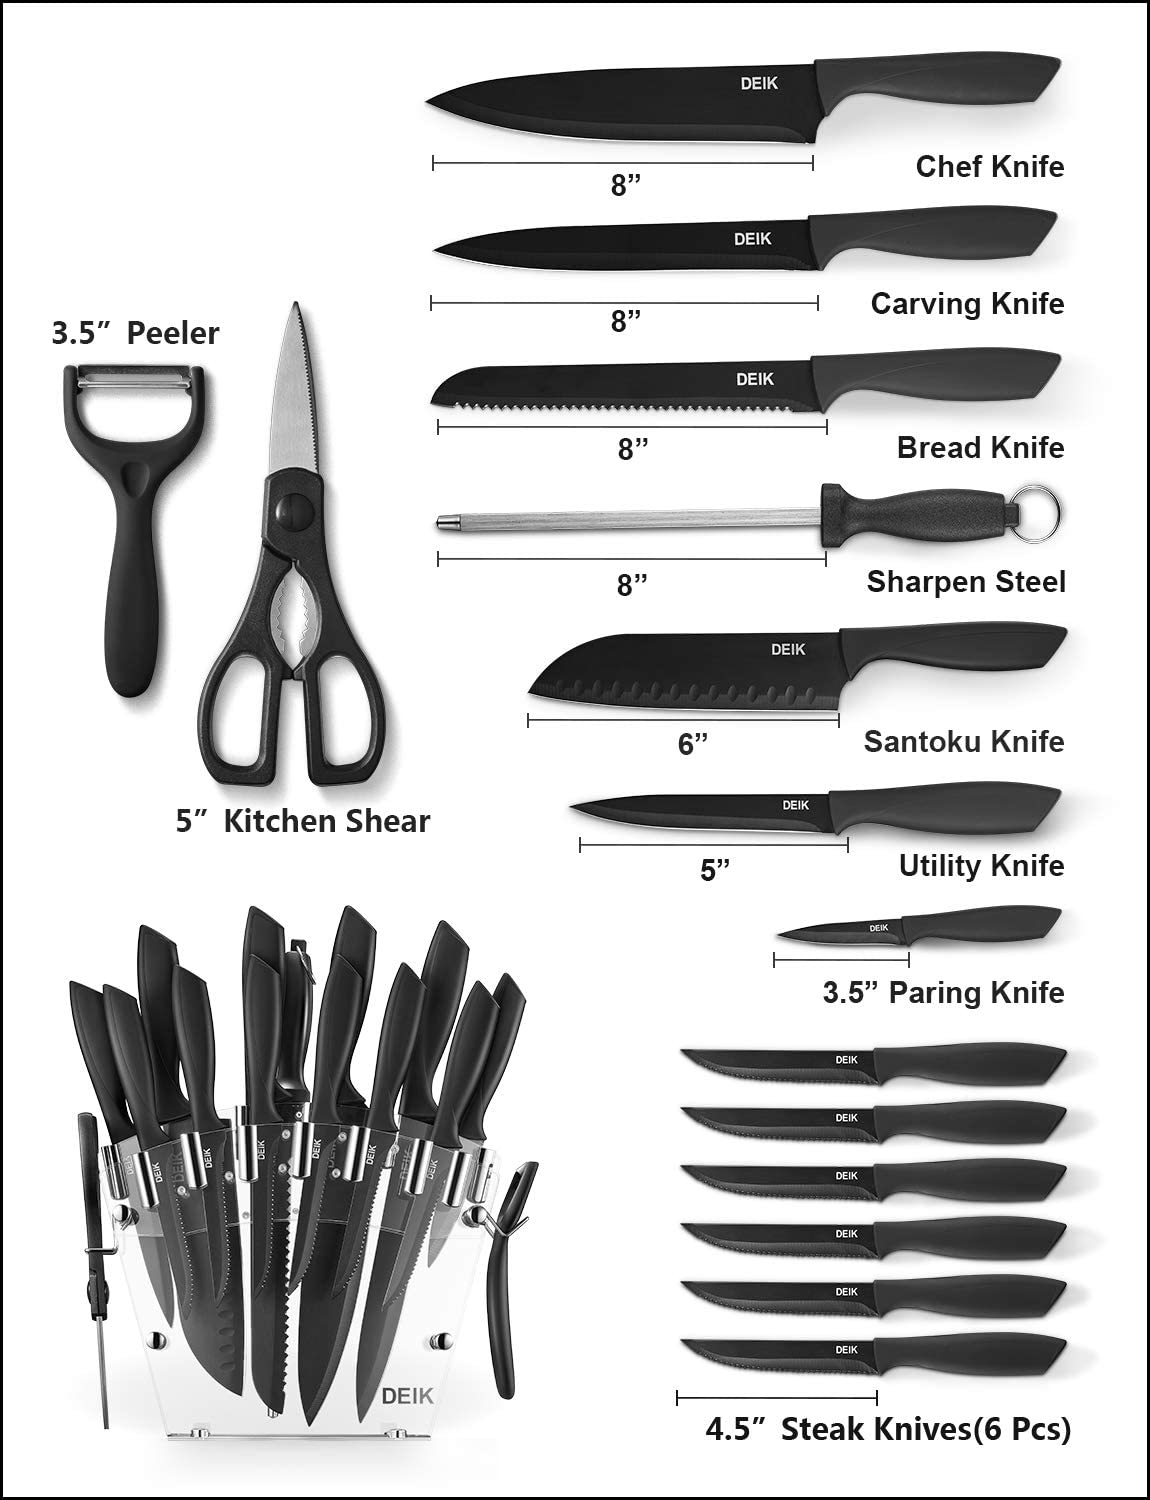 16 Pieces Kitchen Knife Set Dishwasher Safe, Professional Chef Kitchen Knife  Set with Knife Sharpener Peeler Scissors Acrylic Block